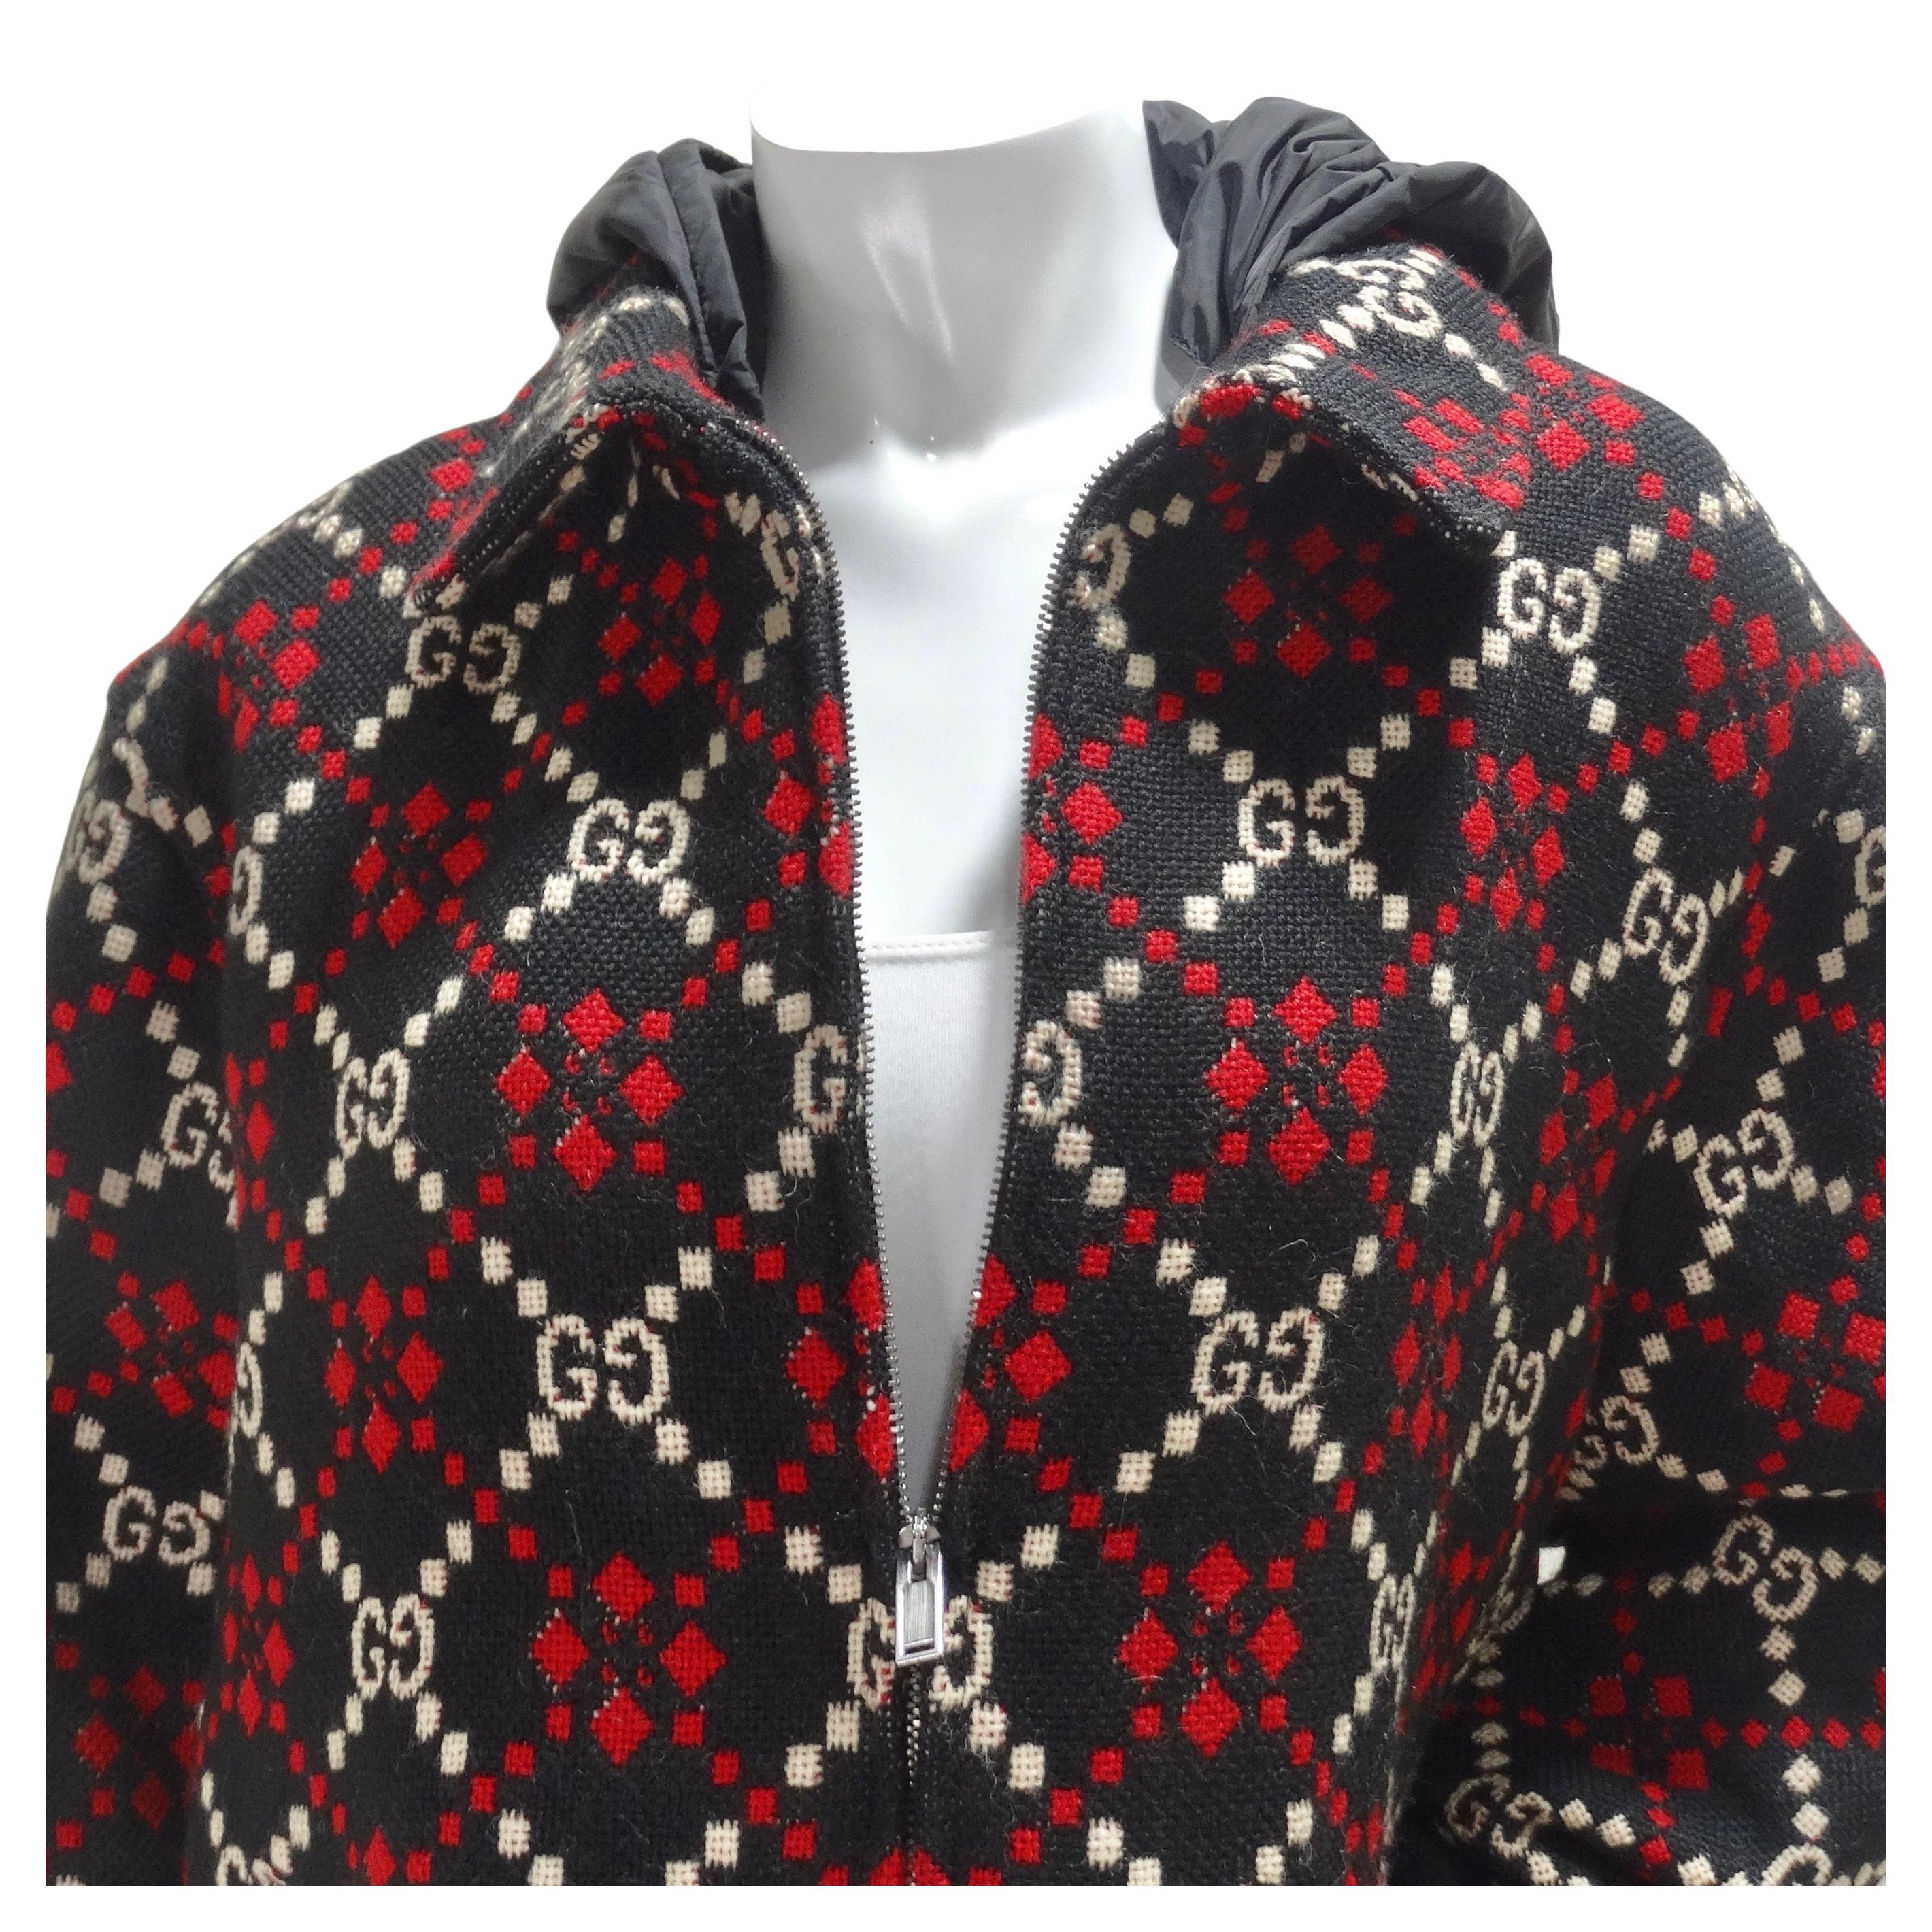 Wunderschöne Gucci Jacke aus 100% Wolle mit dem kultigen GG Monogramm von Gucci. Ausgestattet mit einem zentralen Reißverschluss, Seitentaschen und Rippbündchen an den Ärmeln, ergänzt durch eine Kapuze im Windbreaker-Stil aus Nylon, die einen